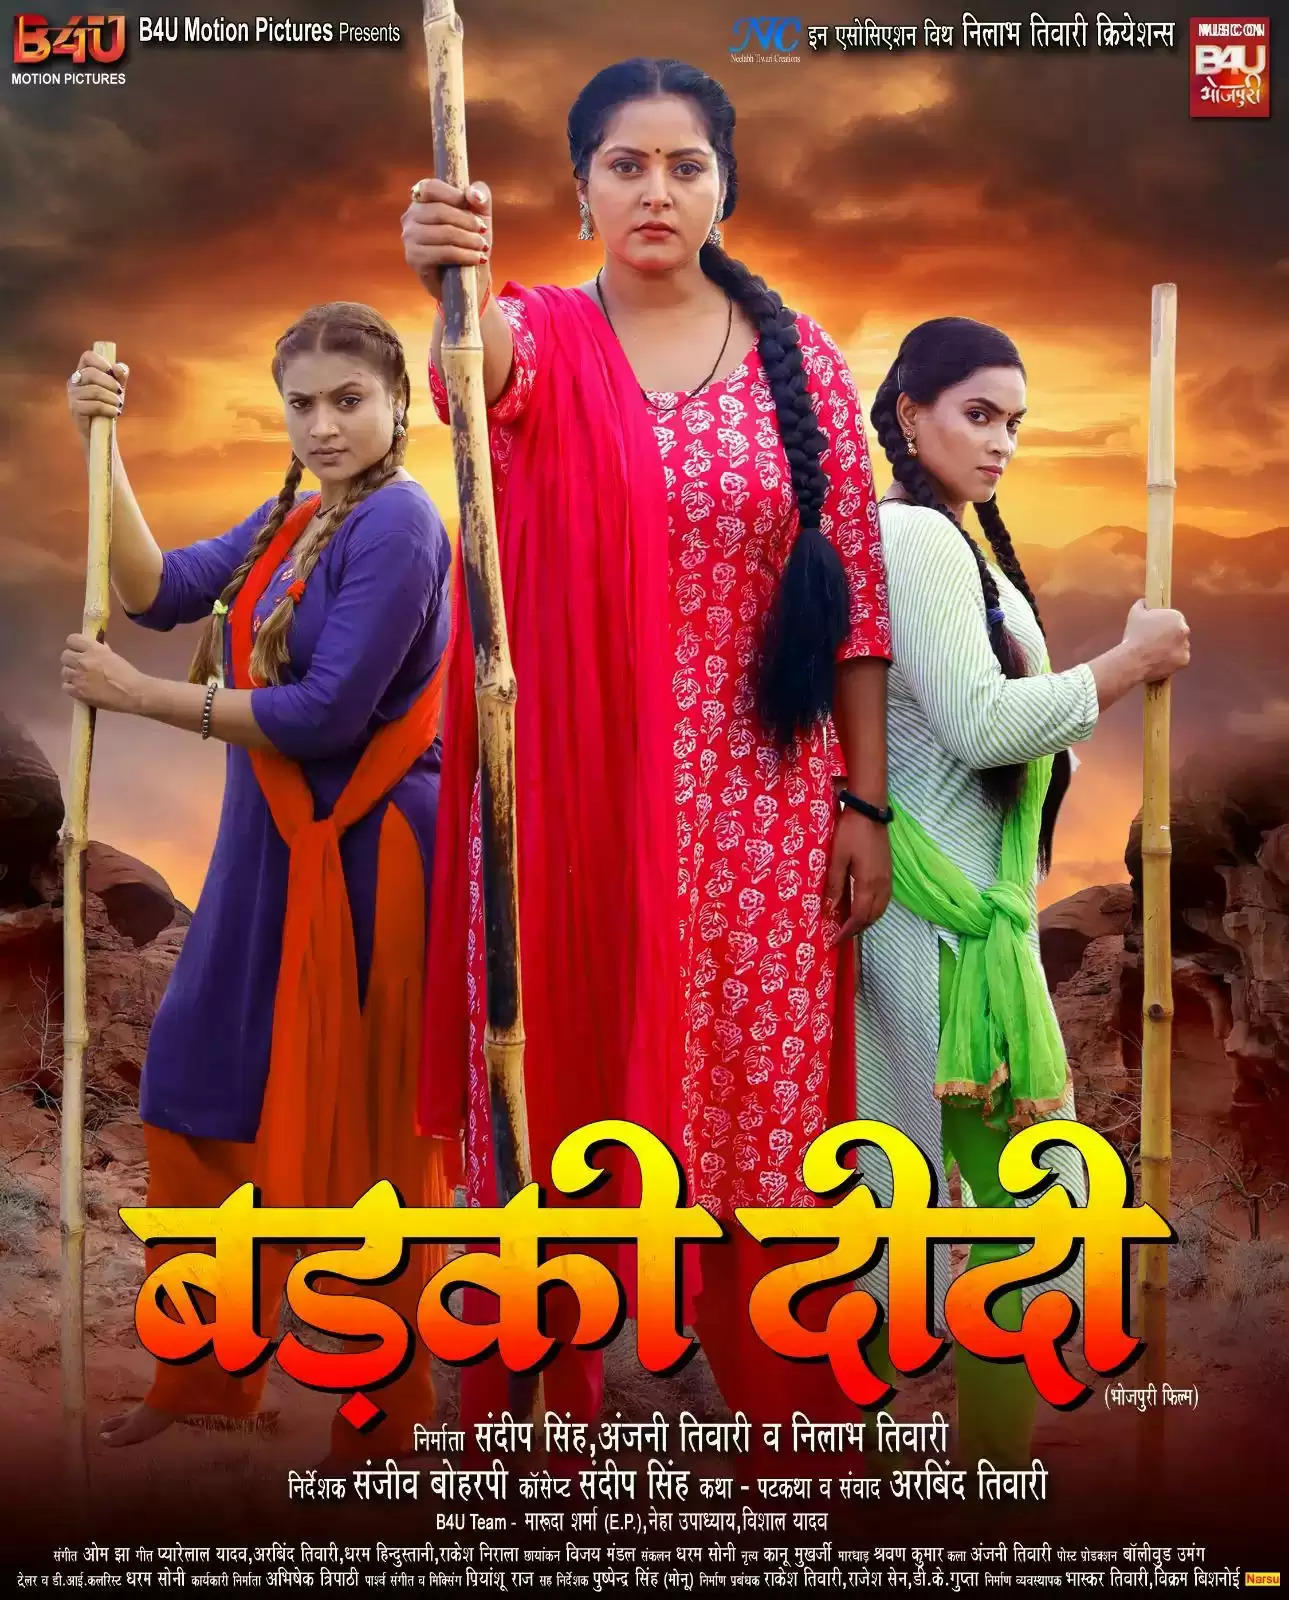 भोजपुरिया हॉट केक अंजना सिंह की फिल्म "बड़की दीदी" का टेलीविजन प्रीमियर 3 फरवरी को"